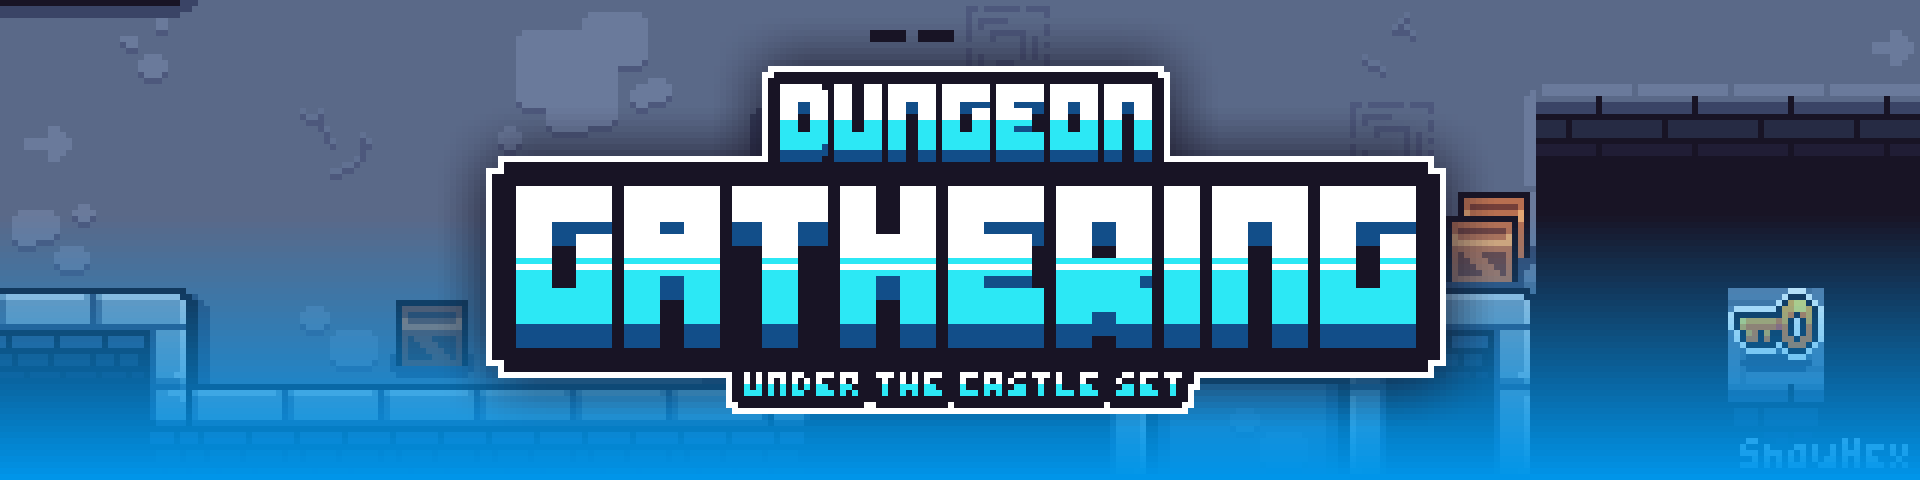 Dungeon Gathering - Under The Castle Set + Updates